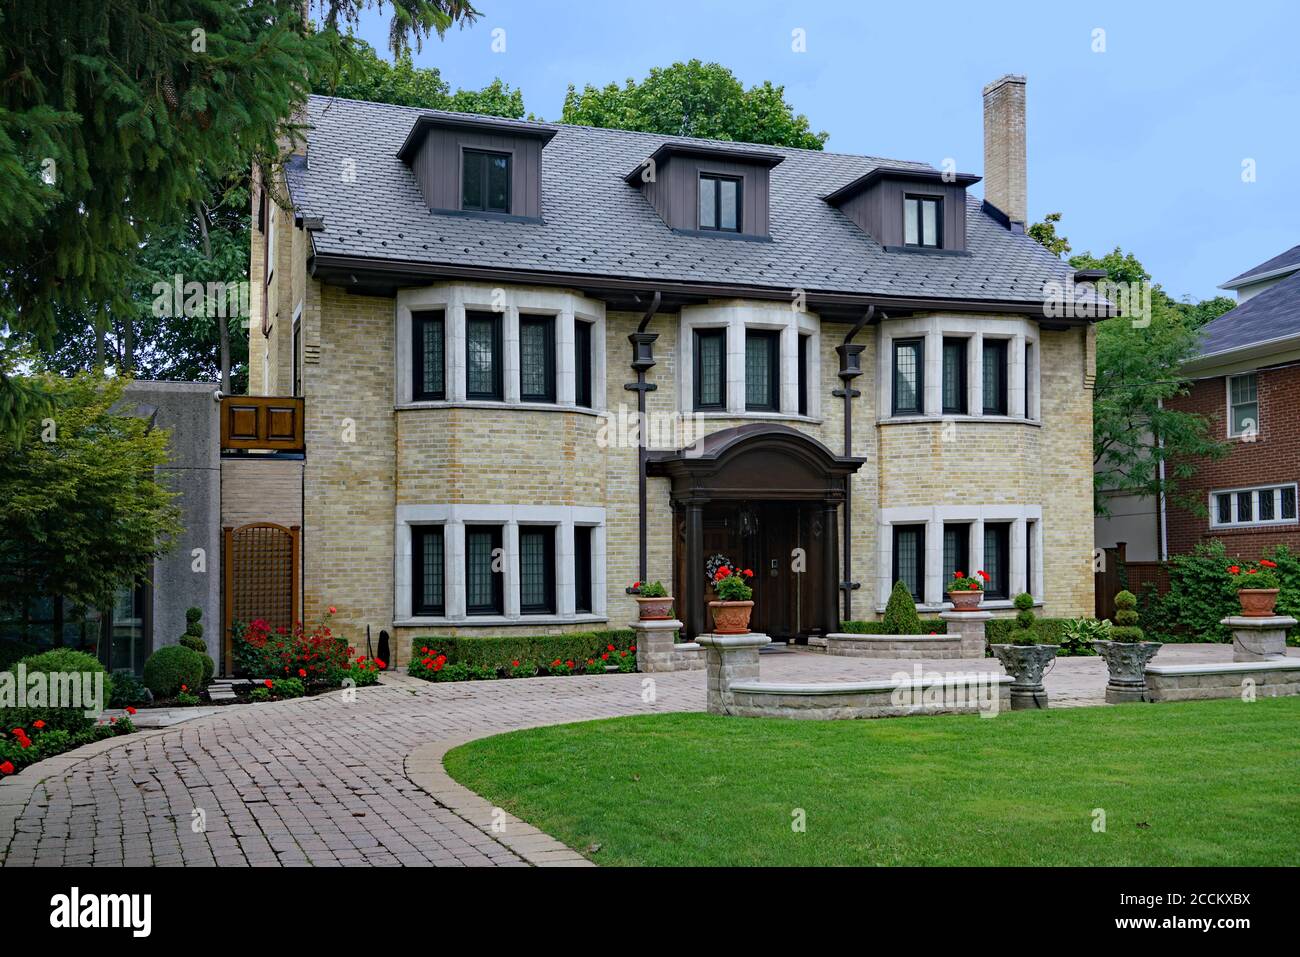 Grande maison indépendante plus ancienne avec un aménagement paysager attrayant, typique de Forest Hill ou du quartier Rosedale de Toronto Banque D'Images